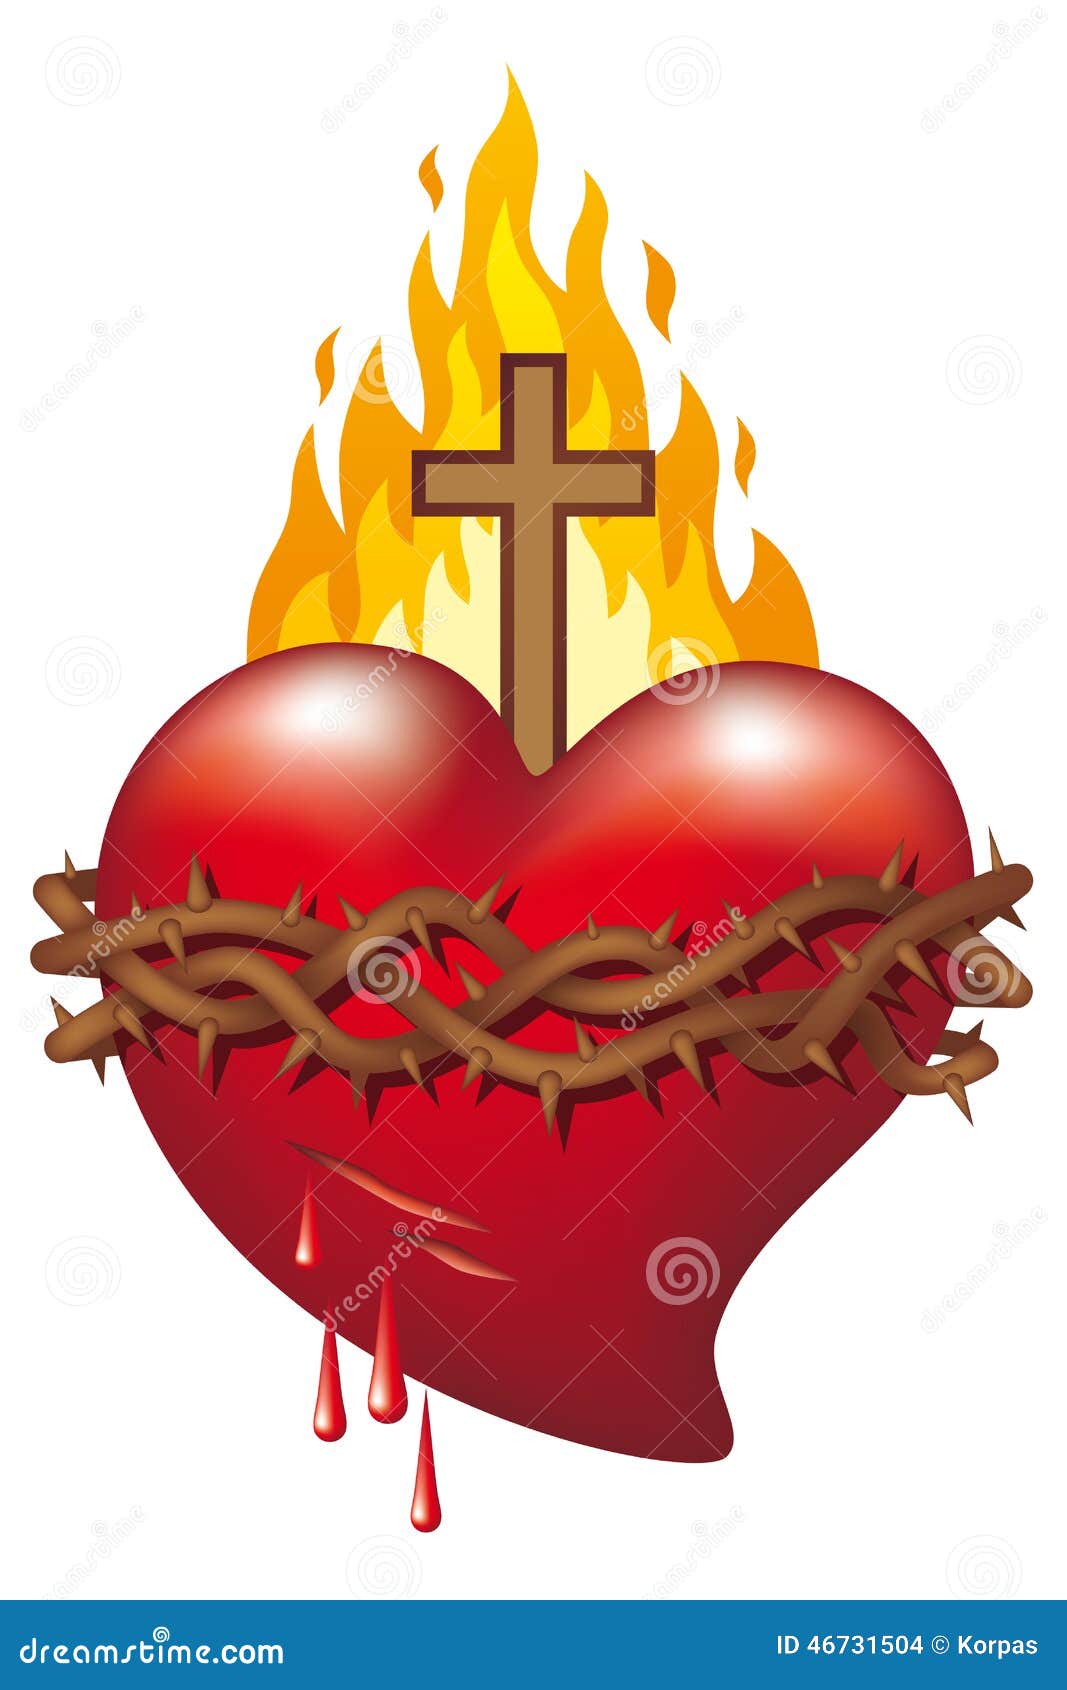 Heart Of Jesus Stock Vector - Image: 46731504